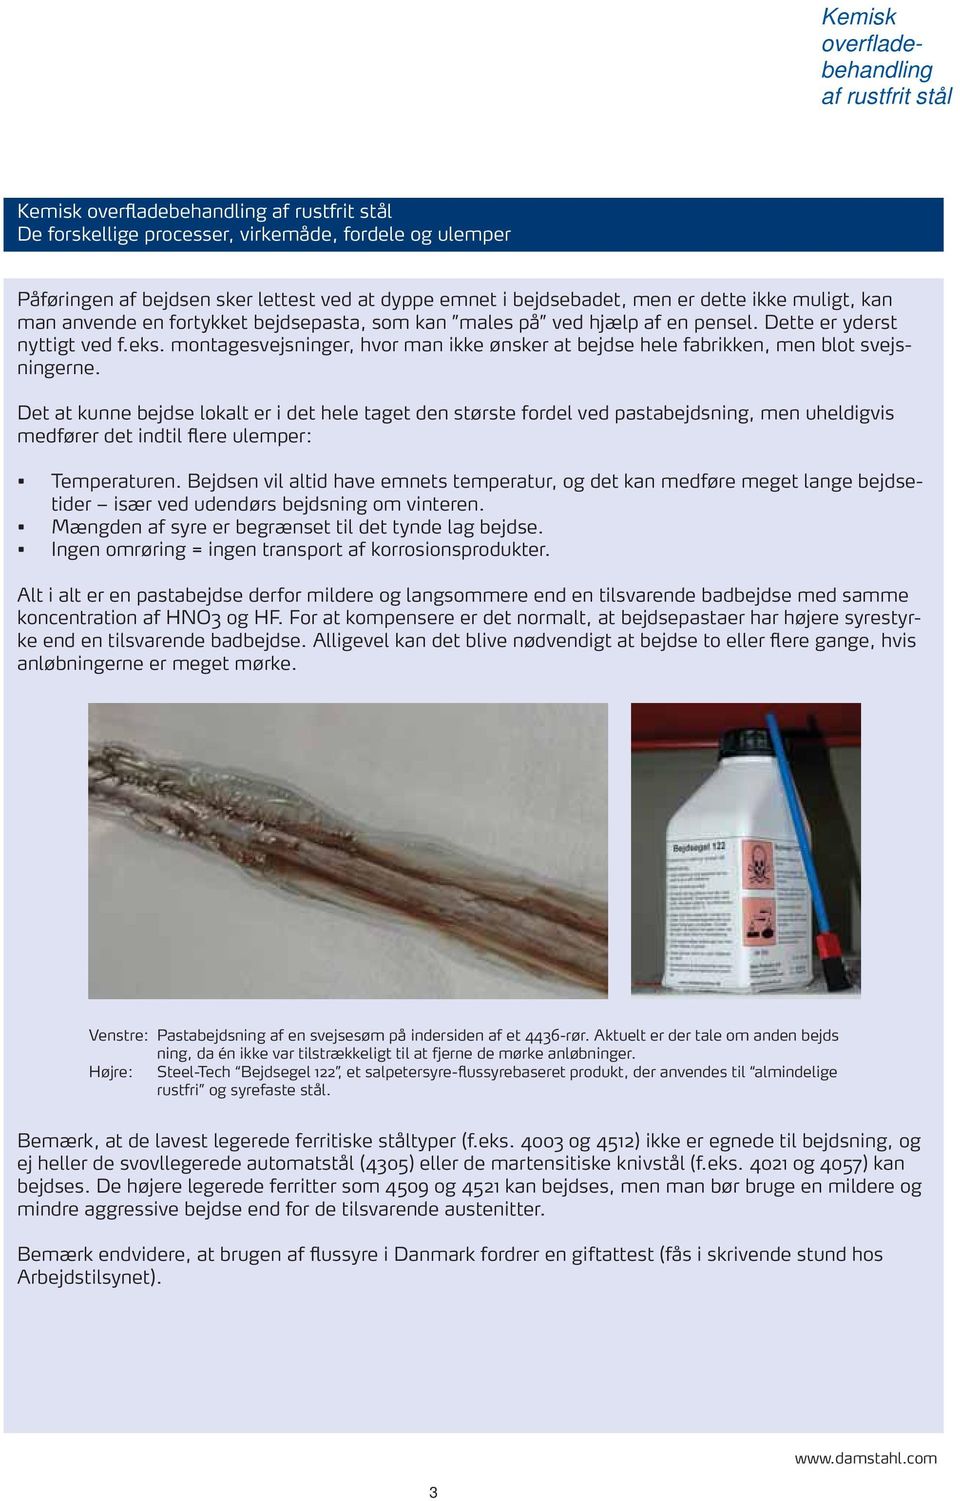 Kemisk overfladebehandling af rustfrit stål - PDF Free Download